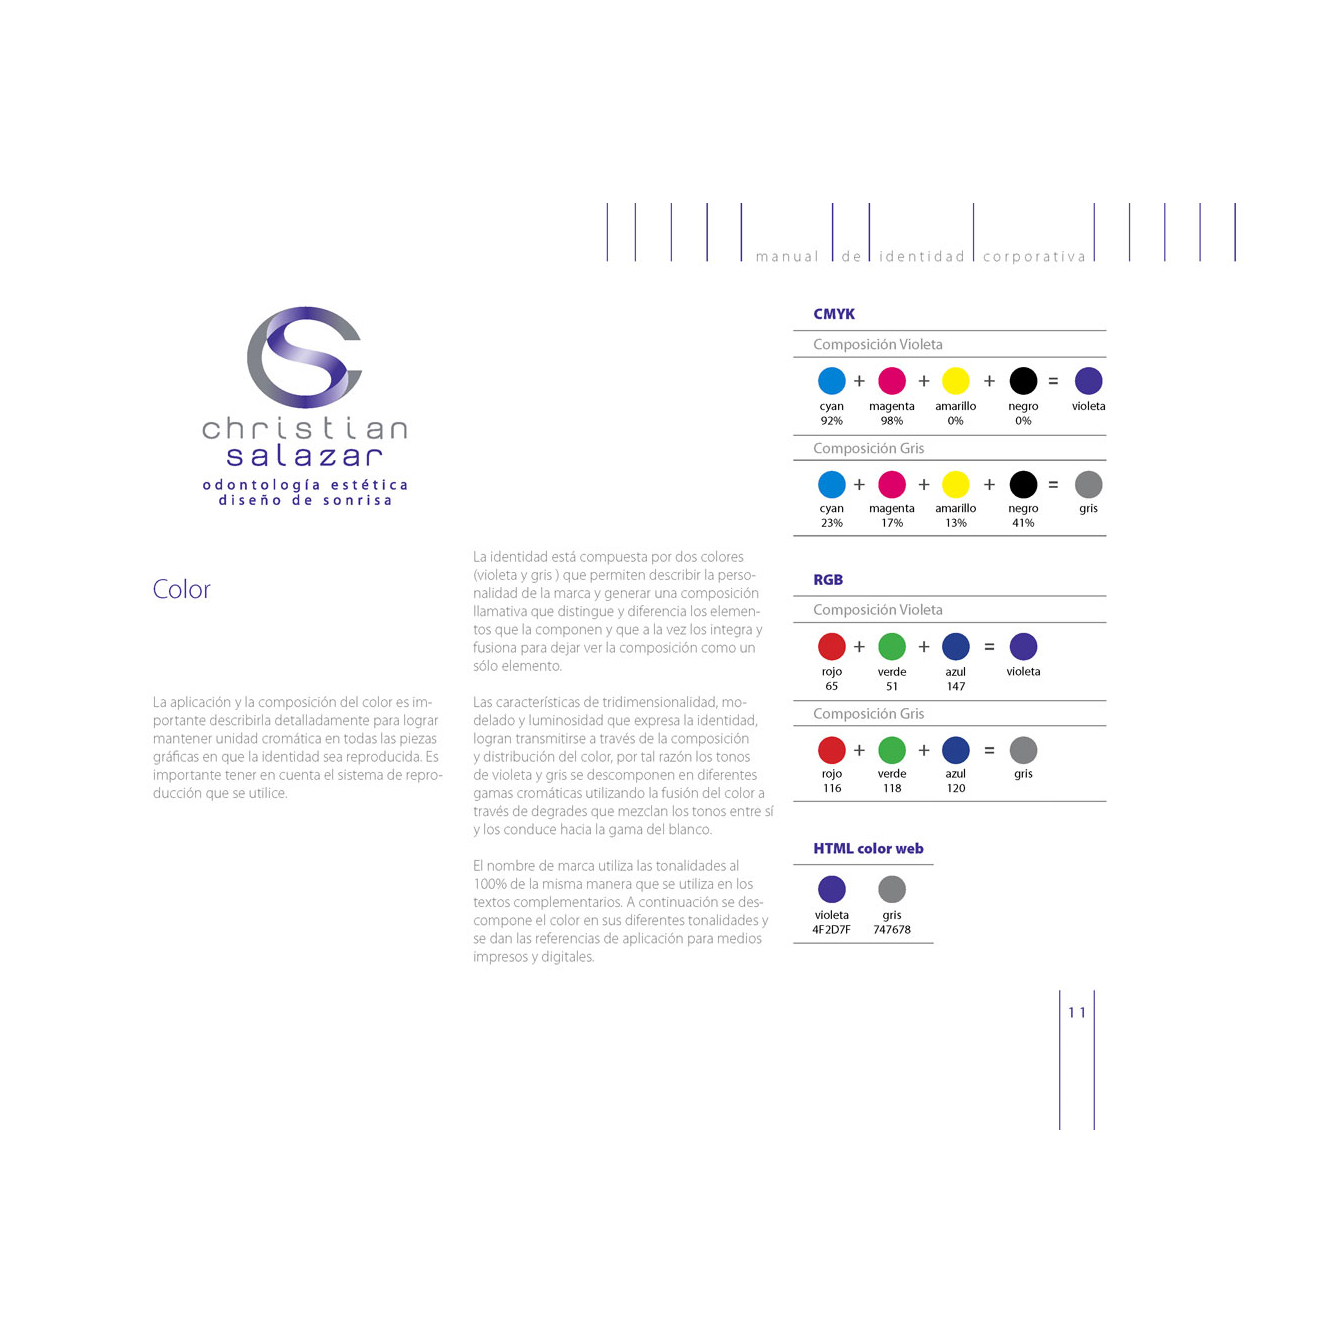 Diseño de Identidad Visual y Logotipo para la marca Christian Salazar Odontología Estética